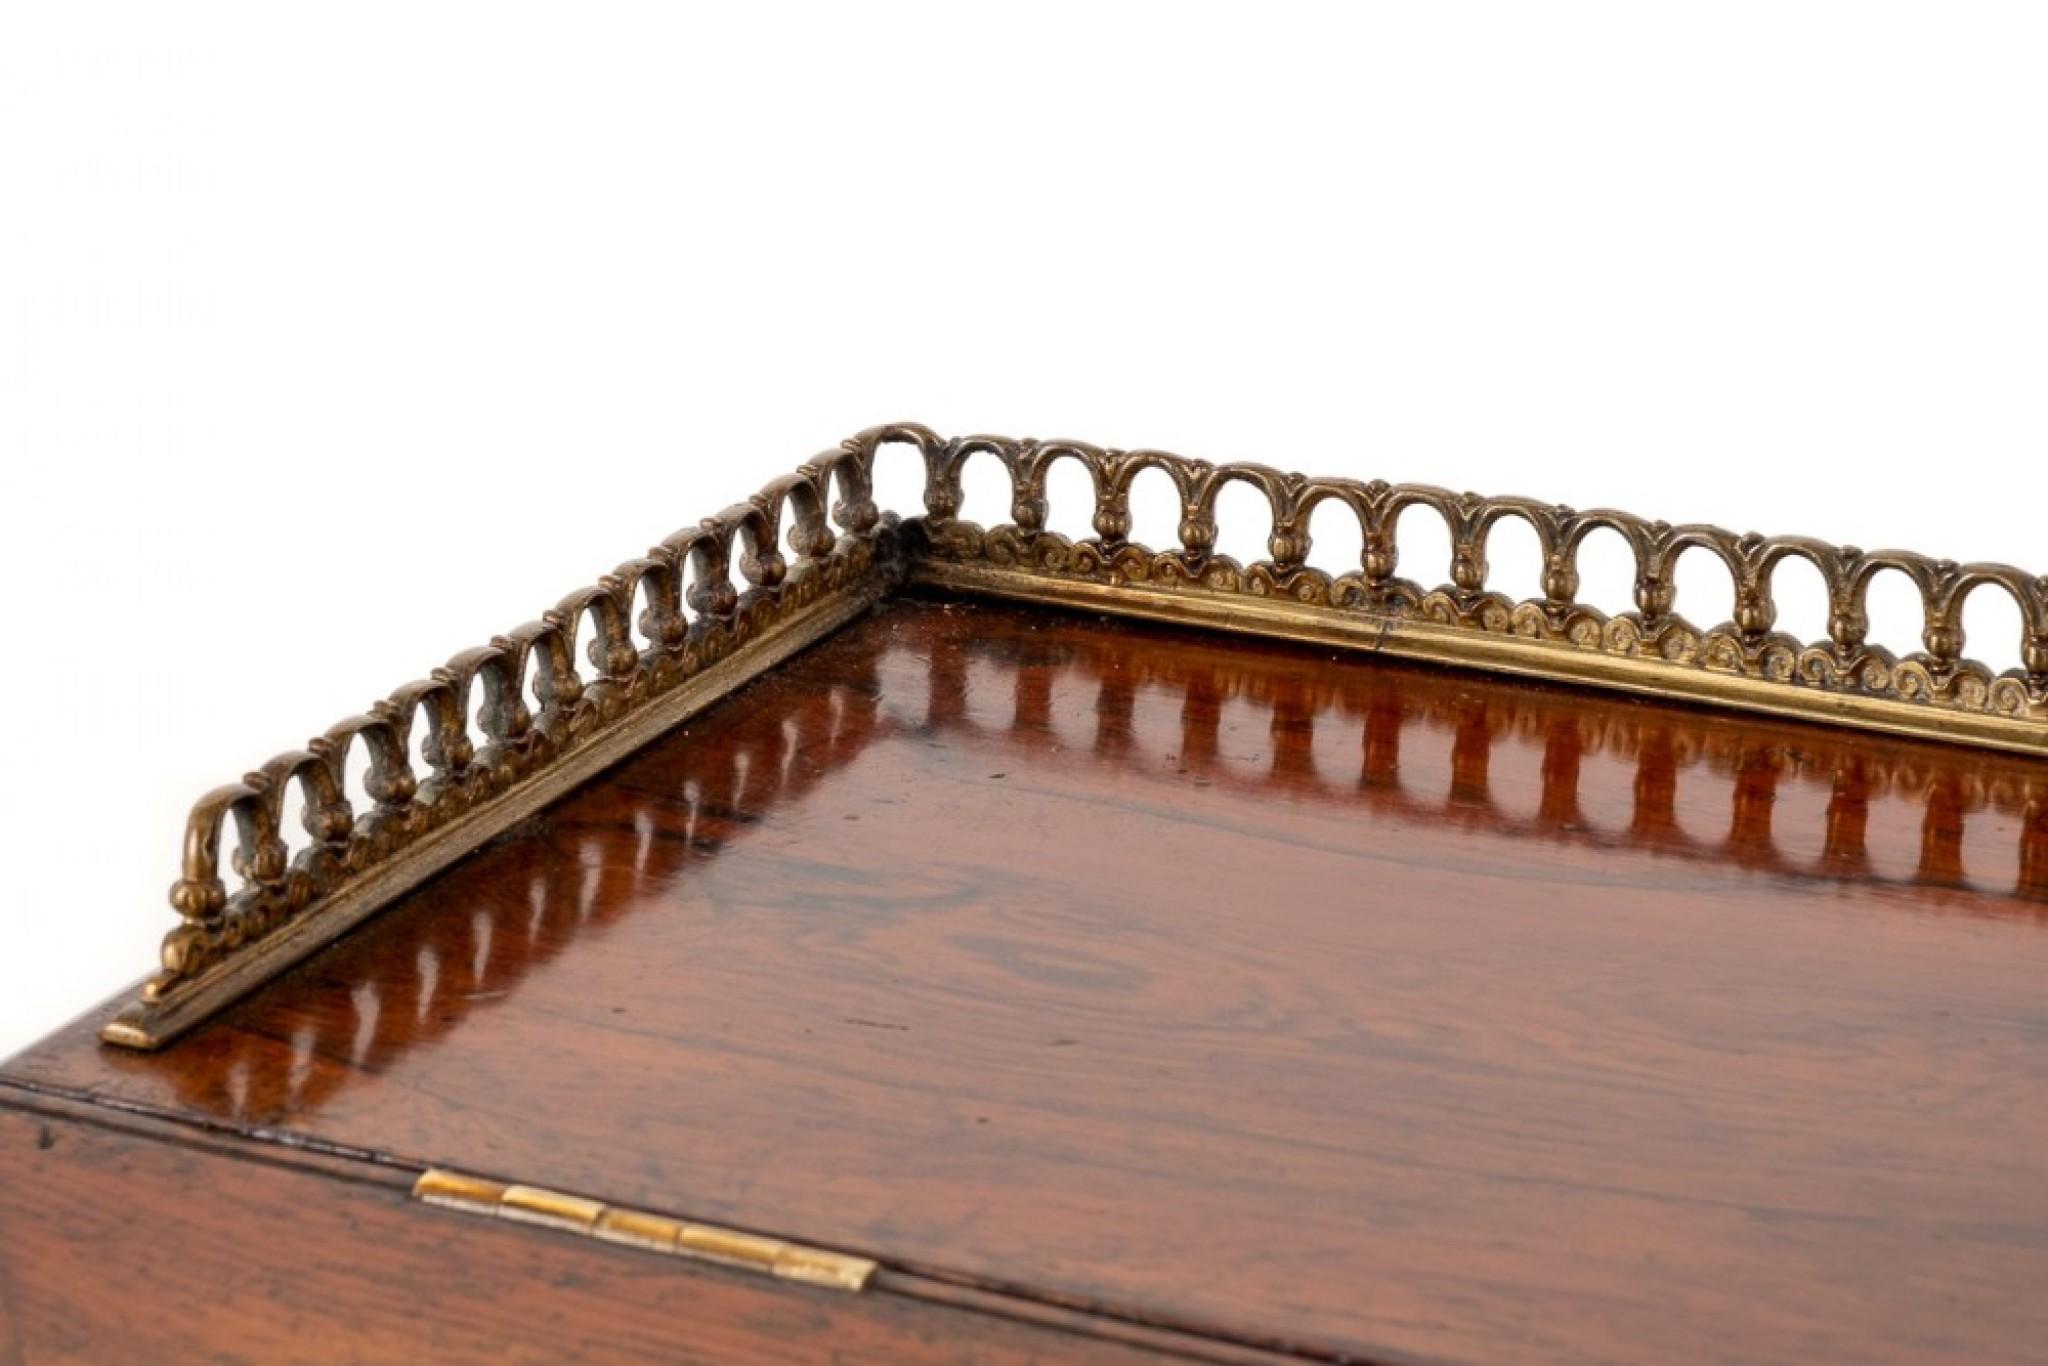 Viktorianischer Palisander-Schiebetor.
Diese Ablage verfügt über eine abgeschrägte Schreibfläche, die sich öffnet, um das Innere aus Vogelaugenahorn mit 2 mit Mahagoni ausgekleideten Schubladen zu enthüllen.
um 1850.
Der Schlupfwinkel ist mit